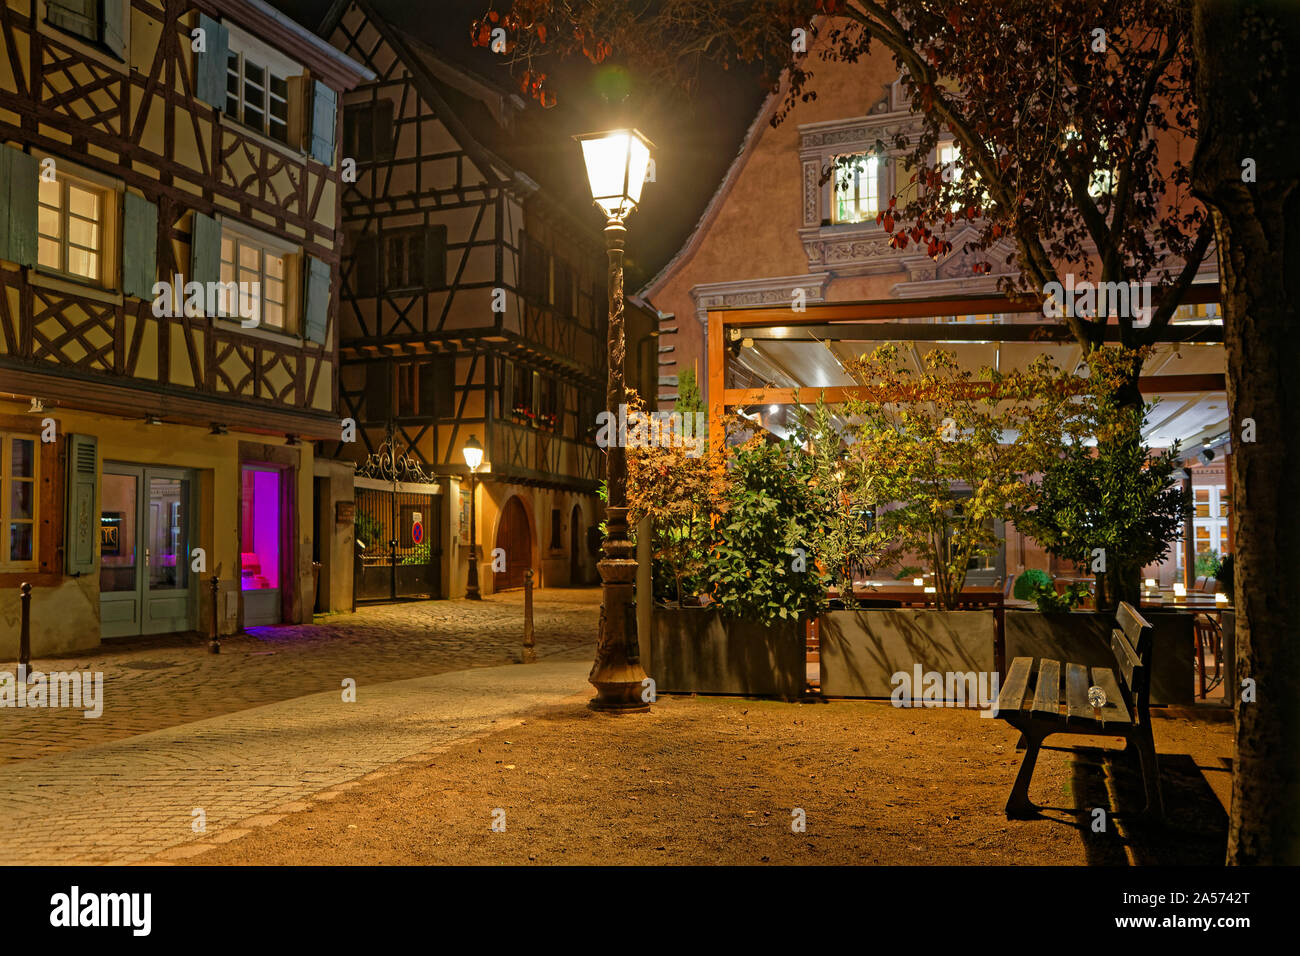 COLMAR, FRANCE, le 11 octobre 2019 : les anciennes rues typiques de Colmar dans la nuit. La ville est renommée pour sa vieille ville bien conservée et ses nombreux archi Banque D'Images